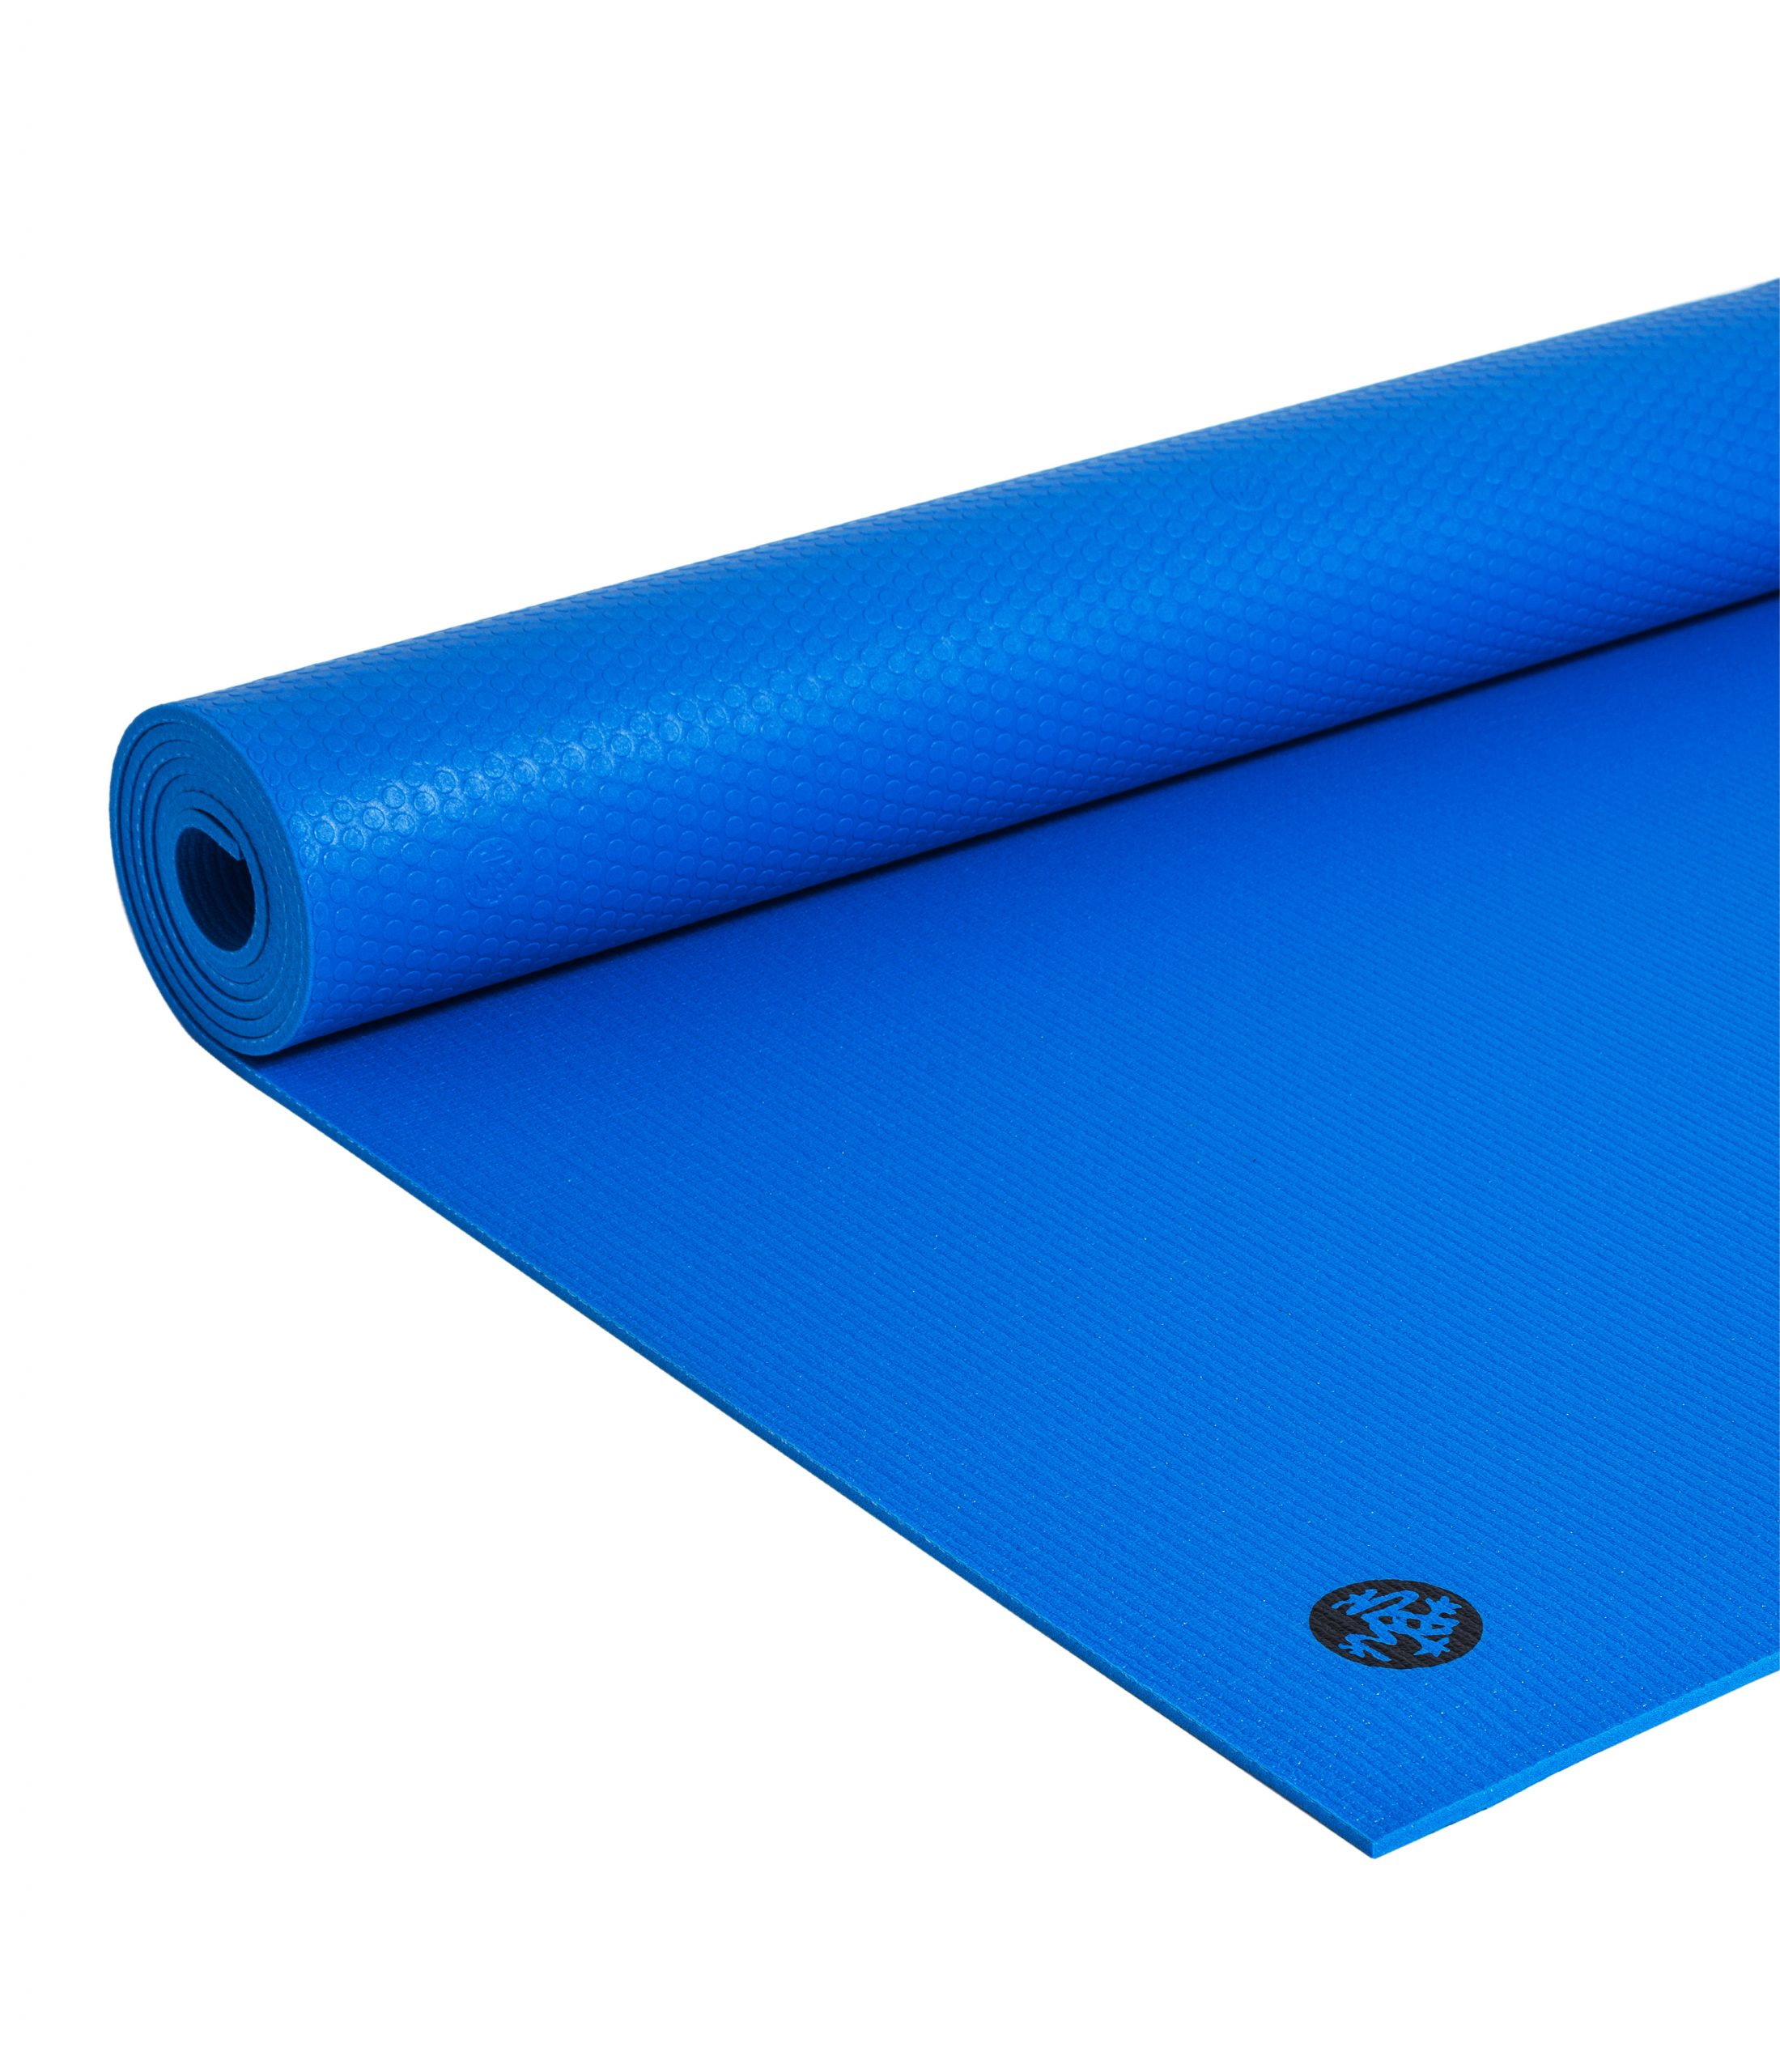 Manduka Prolite Yoga mat 4,7mm. – Truth Blue » I FEEL YOGA